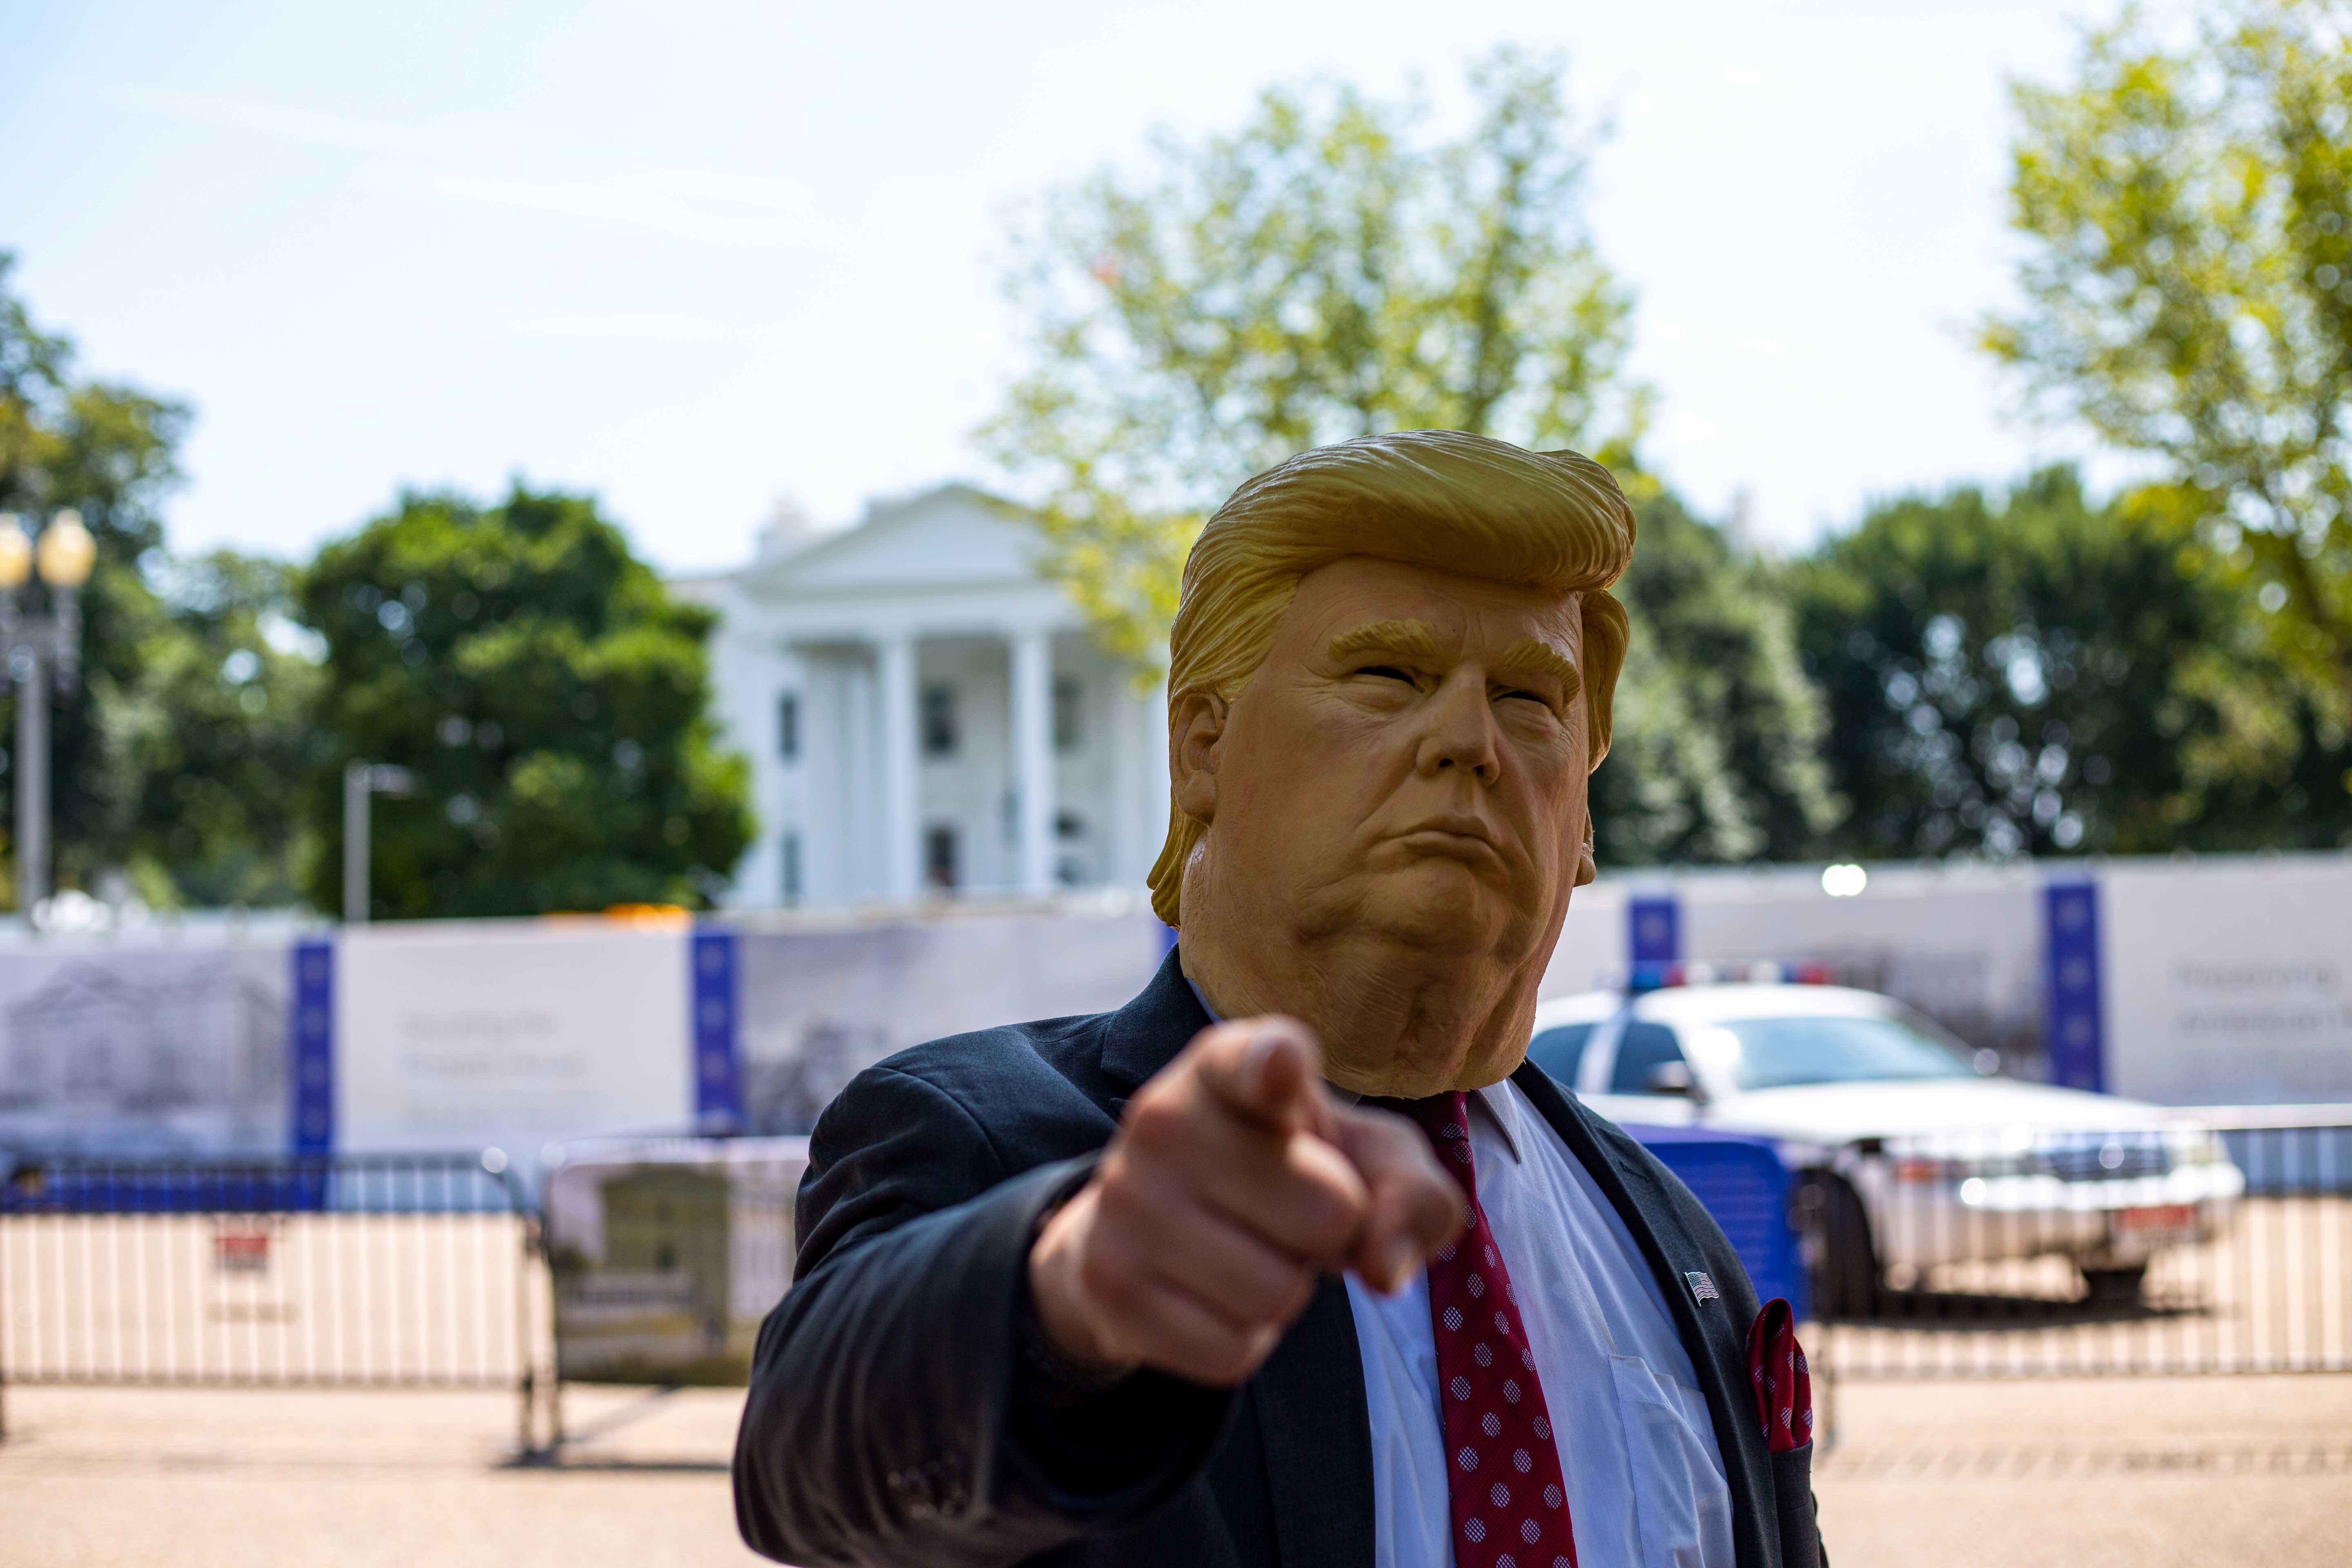 Seorang laki-laki mengenakan topeng Presiden Amerika Serikat, Donald Trump. (Foto:Unsplash.com)